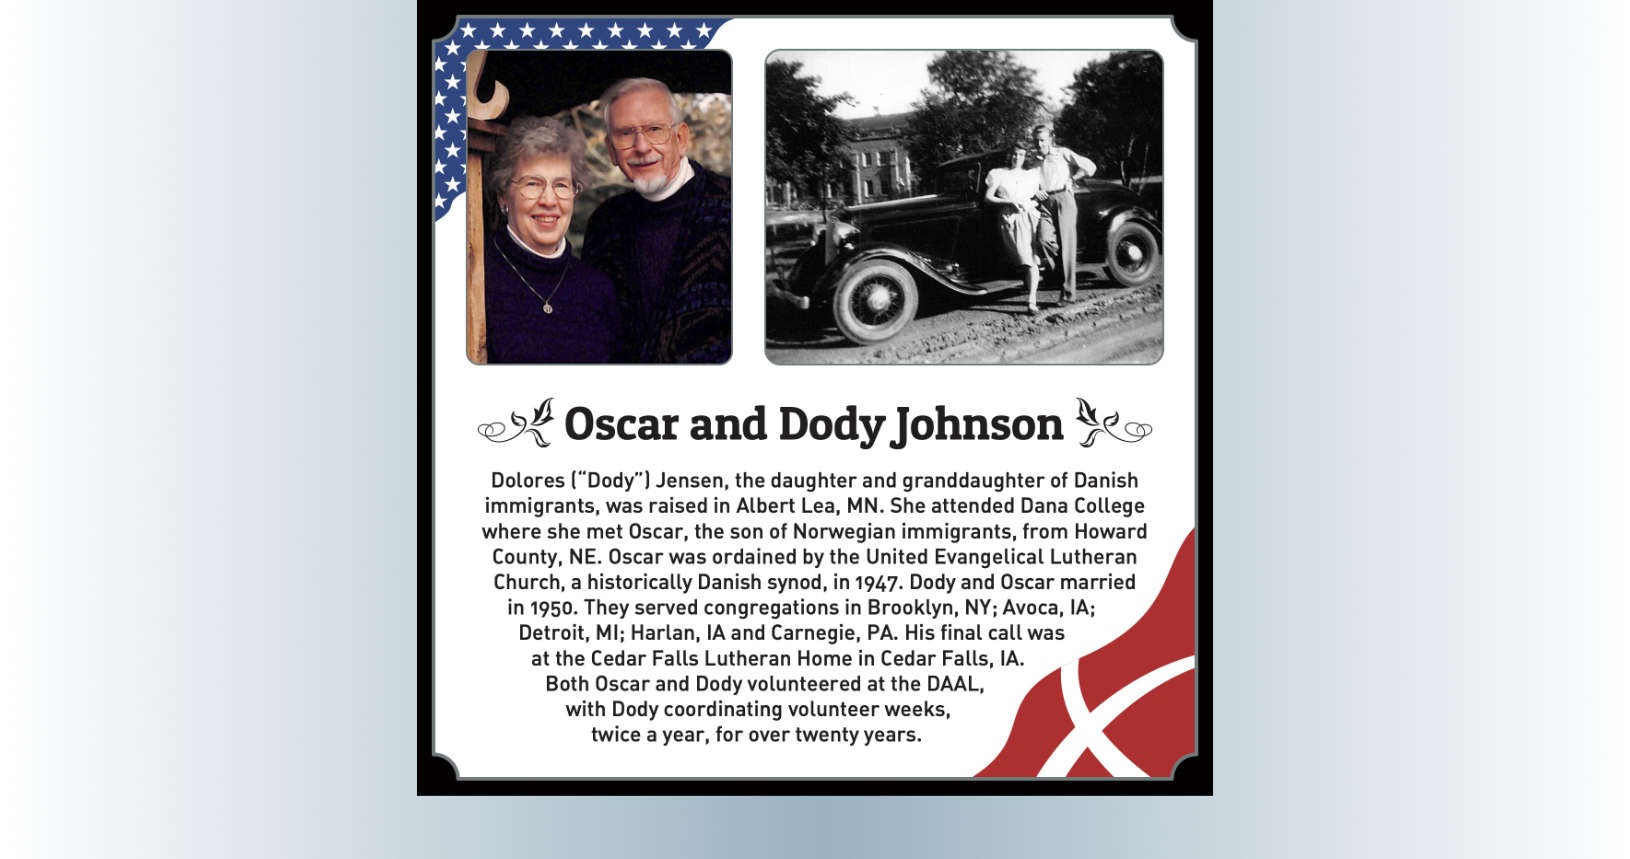 Oscar and Dody Johnson